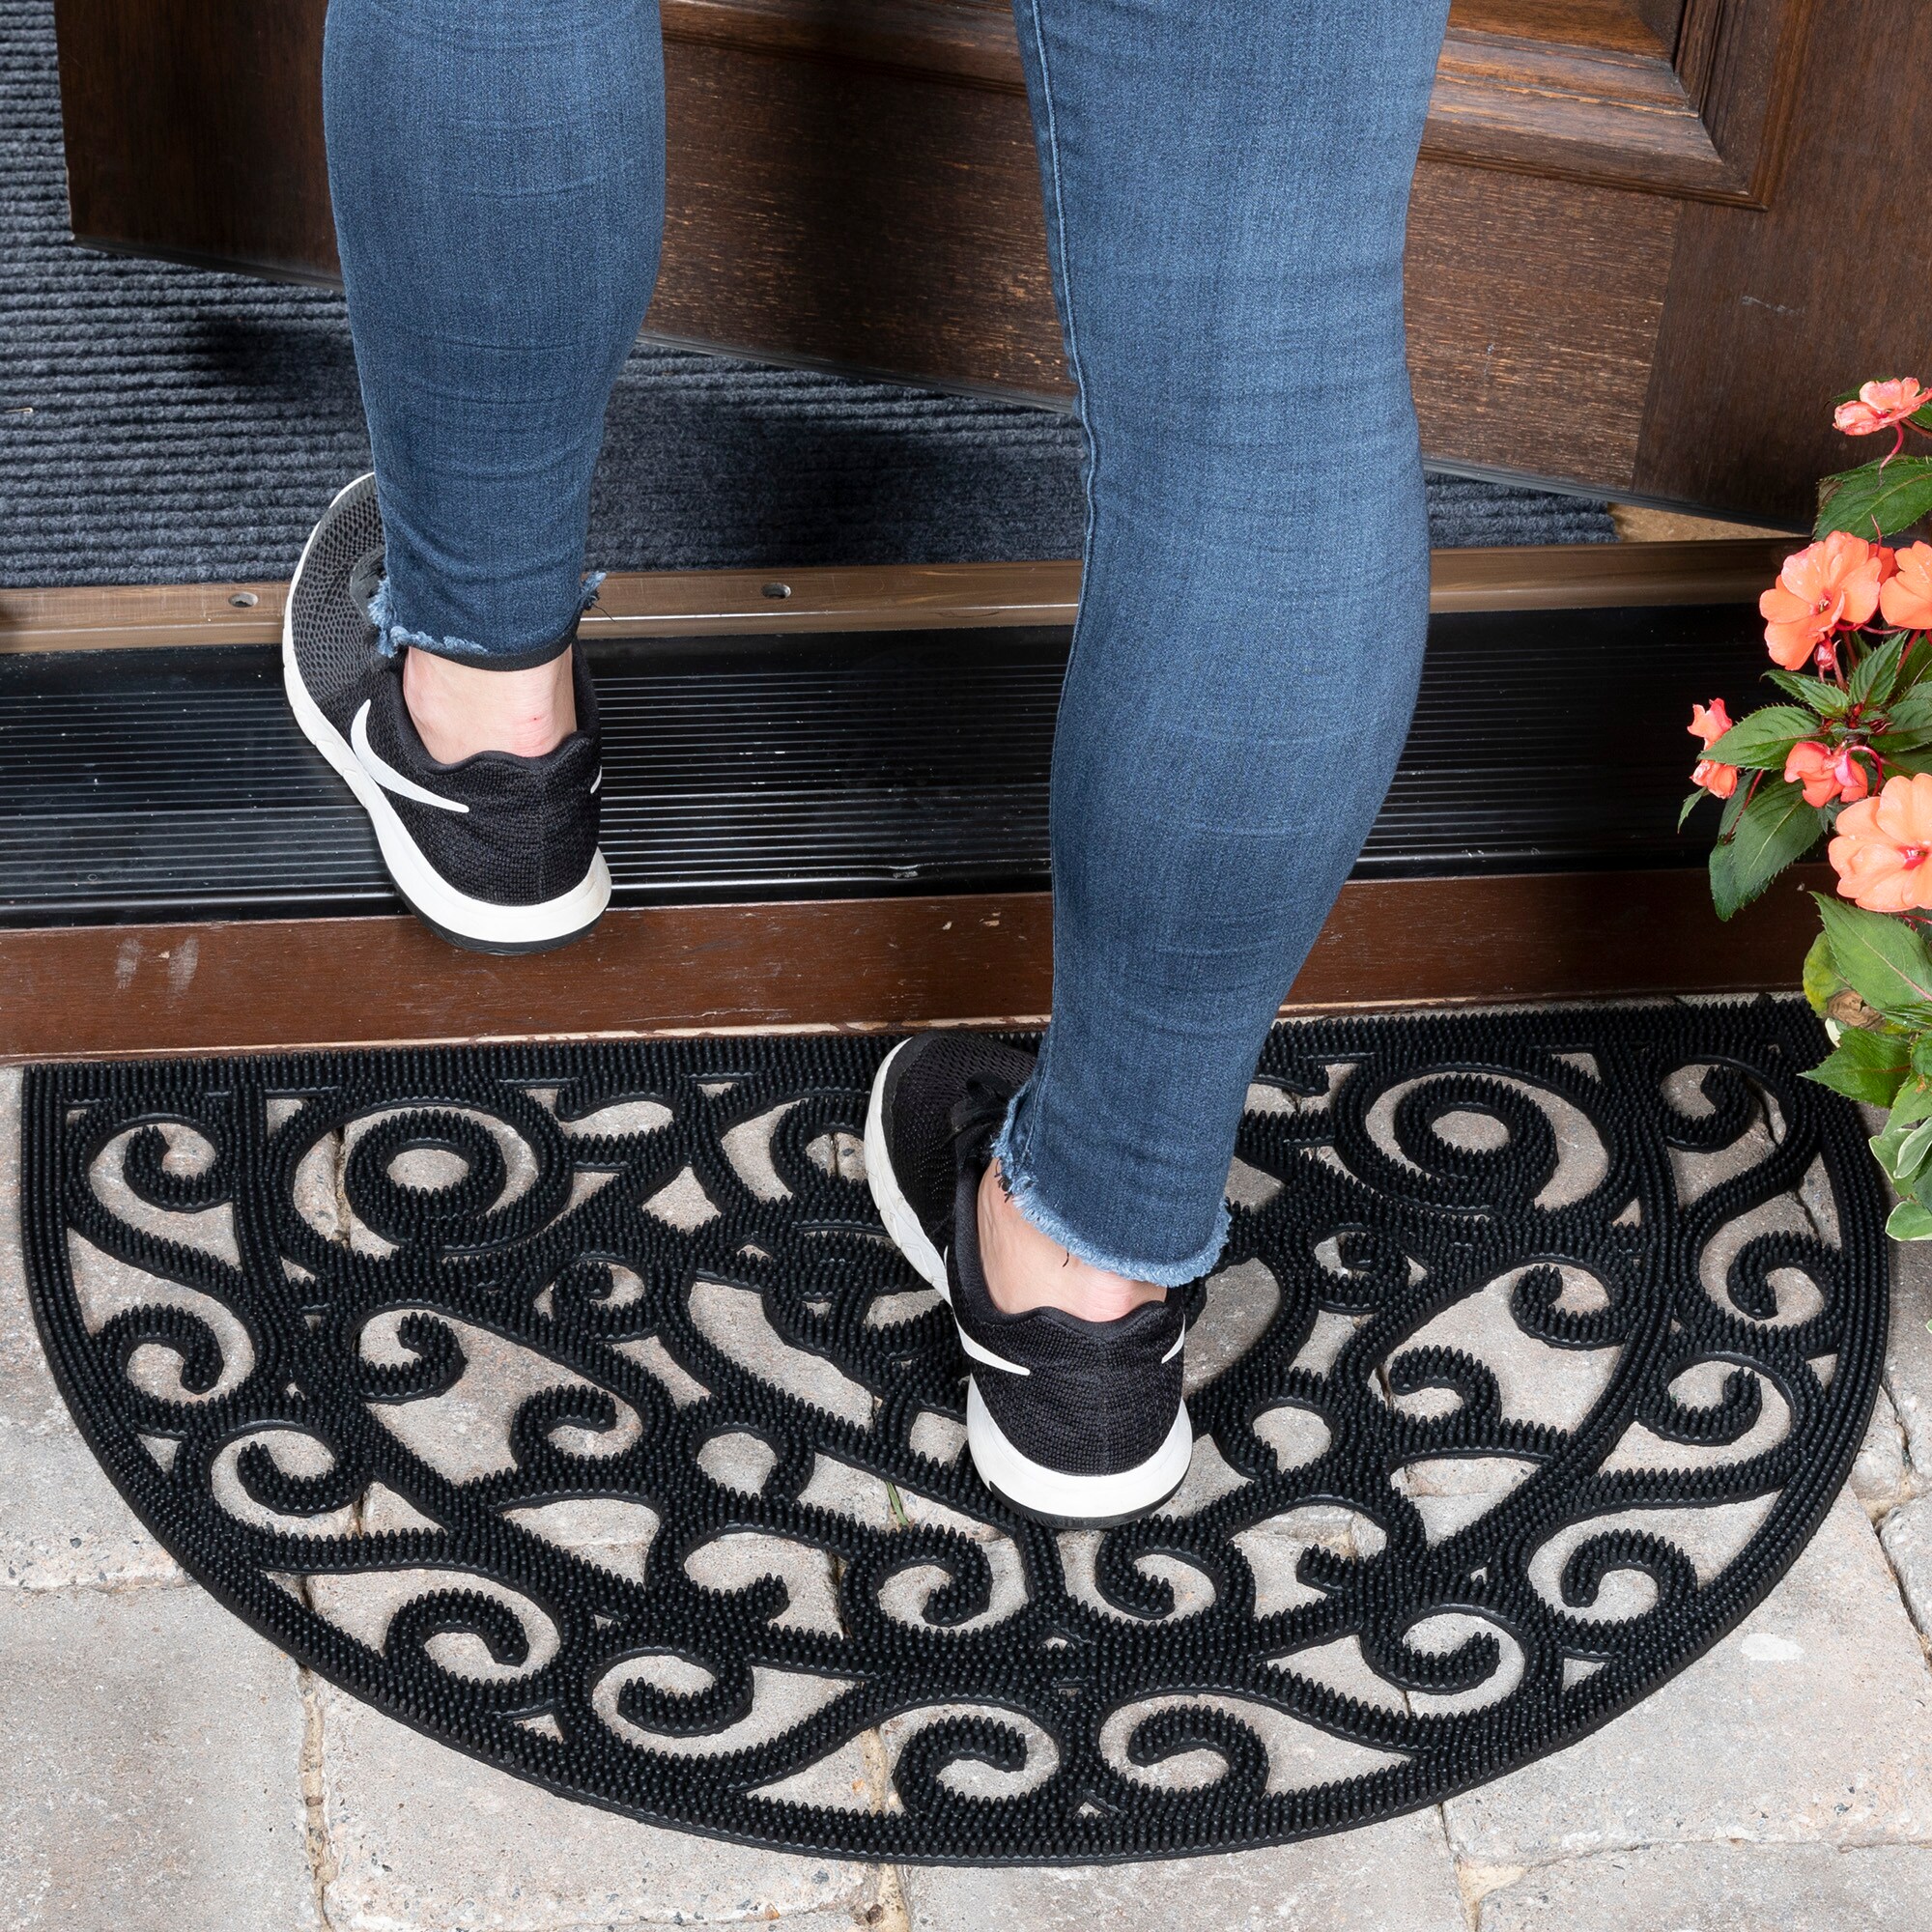 Ottomanson Easy Clean, Waterproof Non-Slip Indoor/Outdoor Rubber Doormat,  18 x 30, Charcoal 